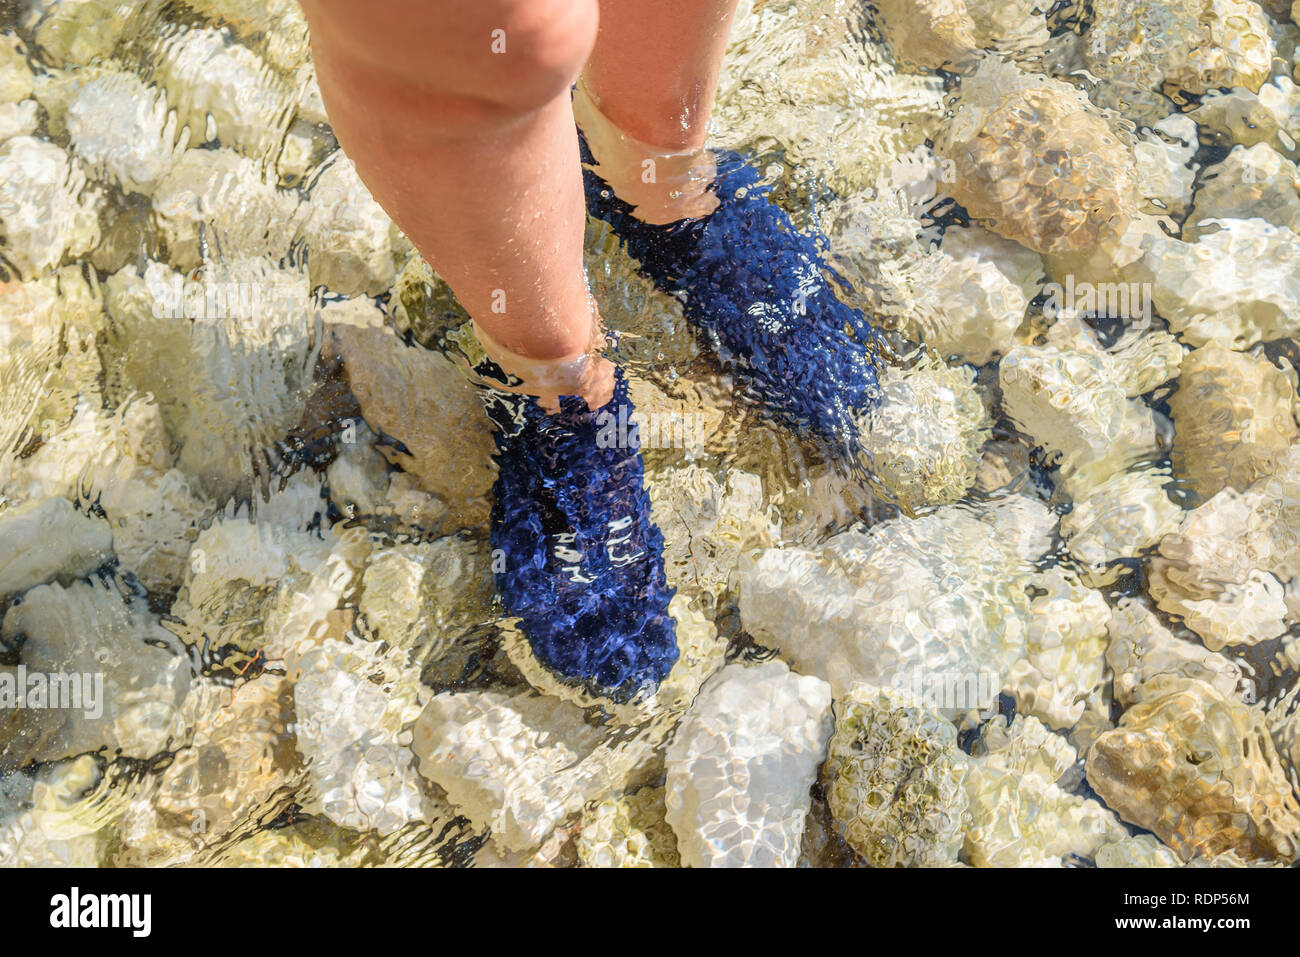 Die Füße im Wasser in spezielle Schuhe verpackt von Seeigel zu schützen  Stockfotografie - Alamy